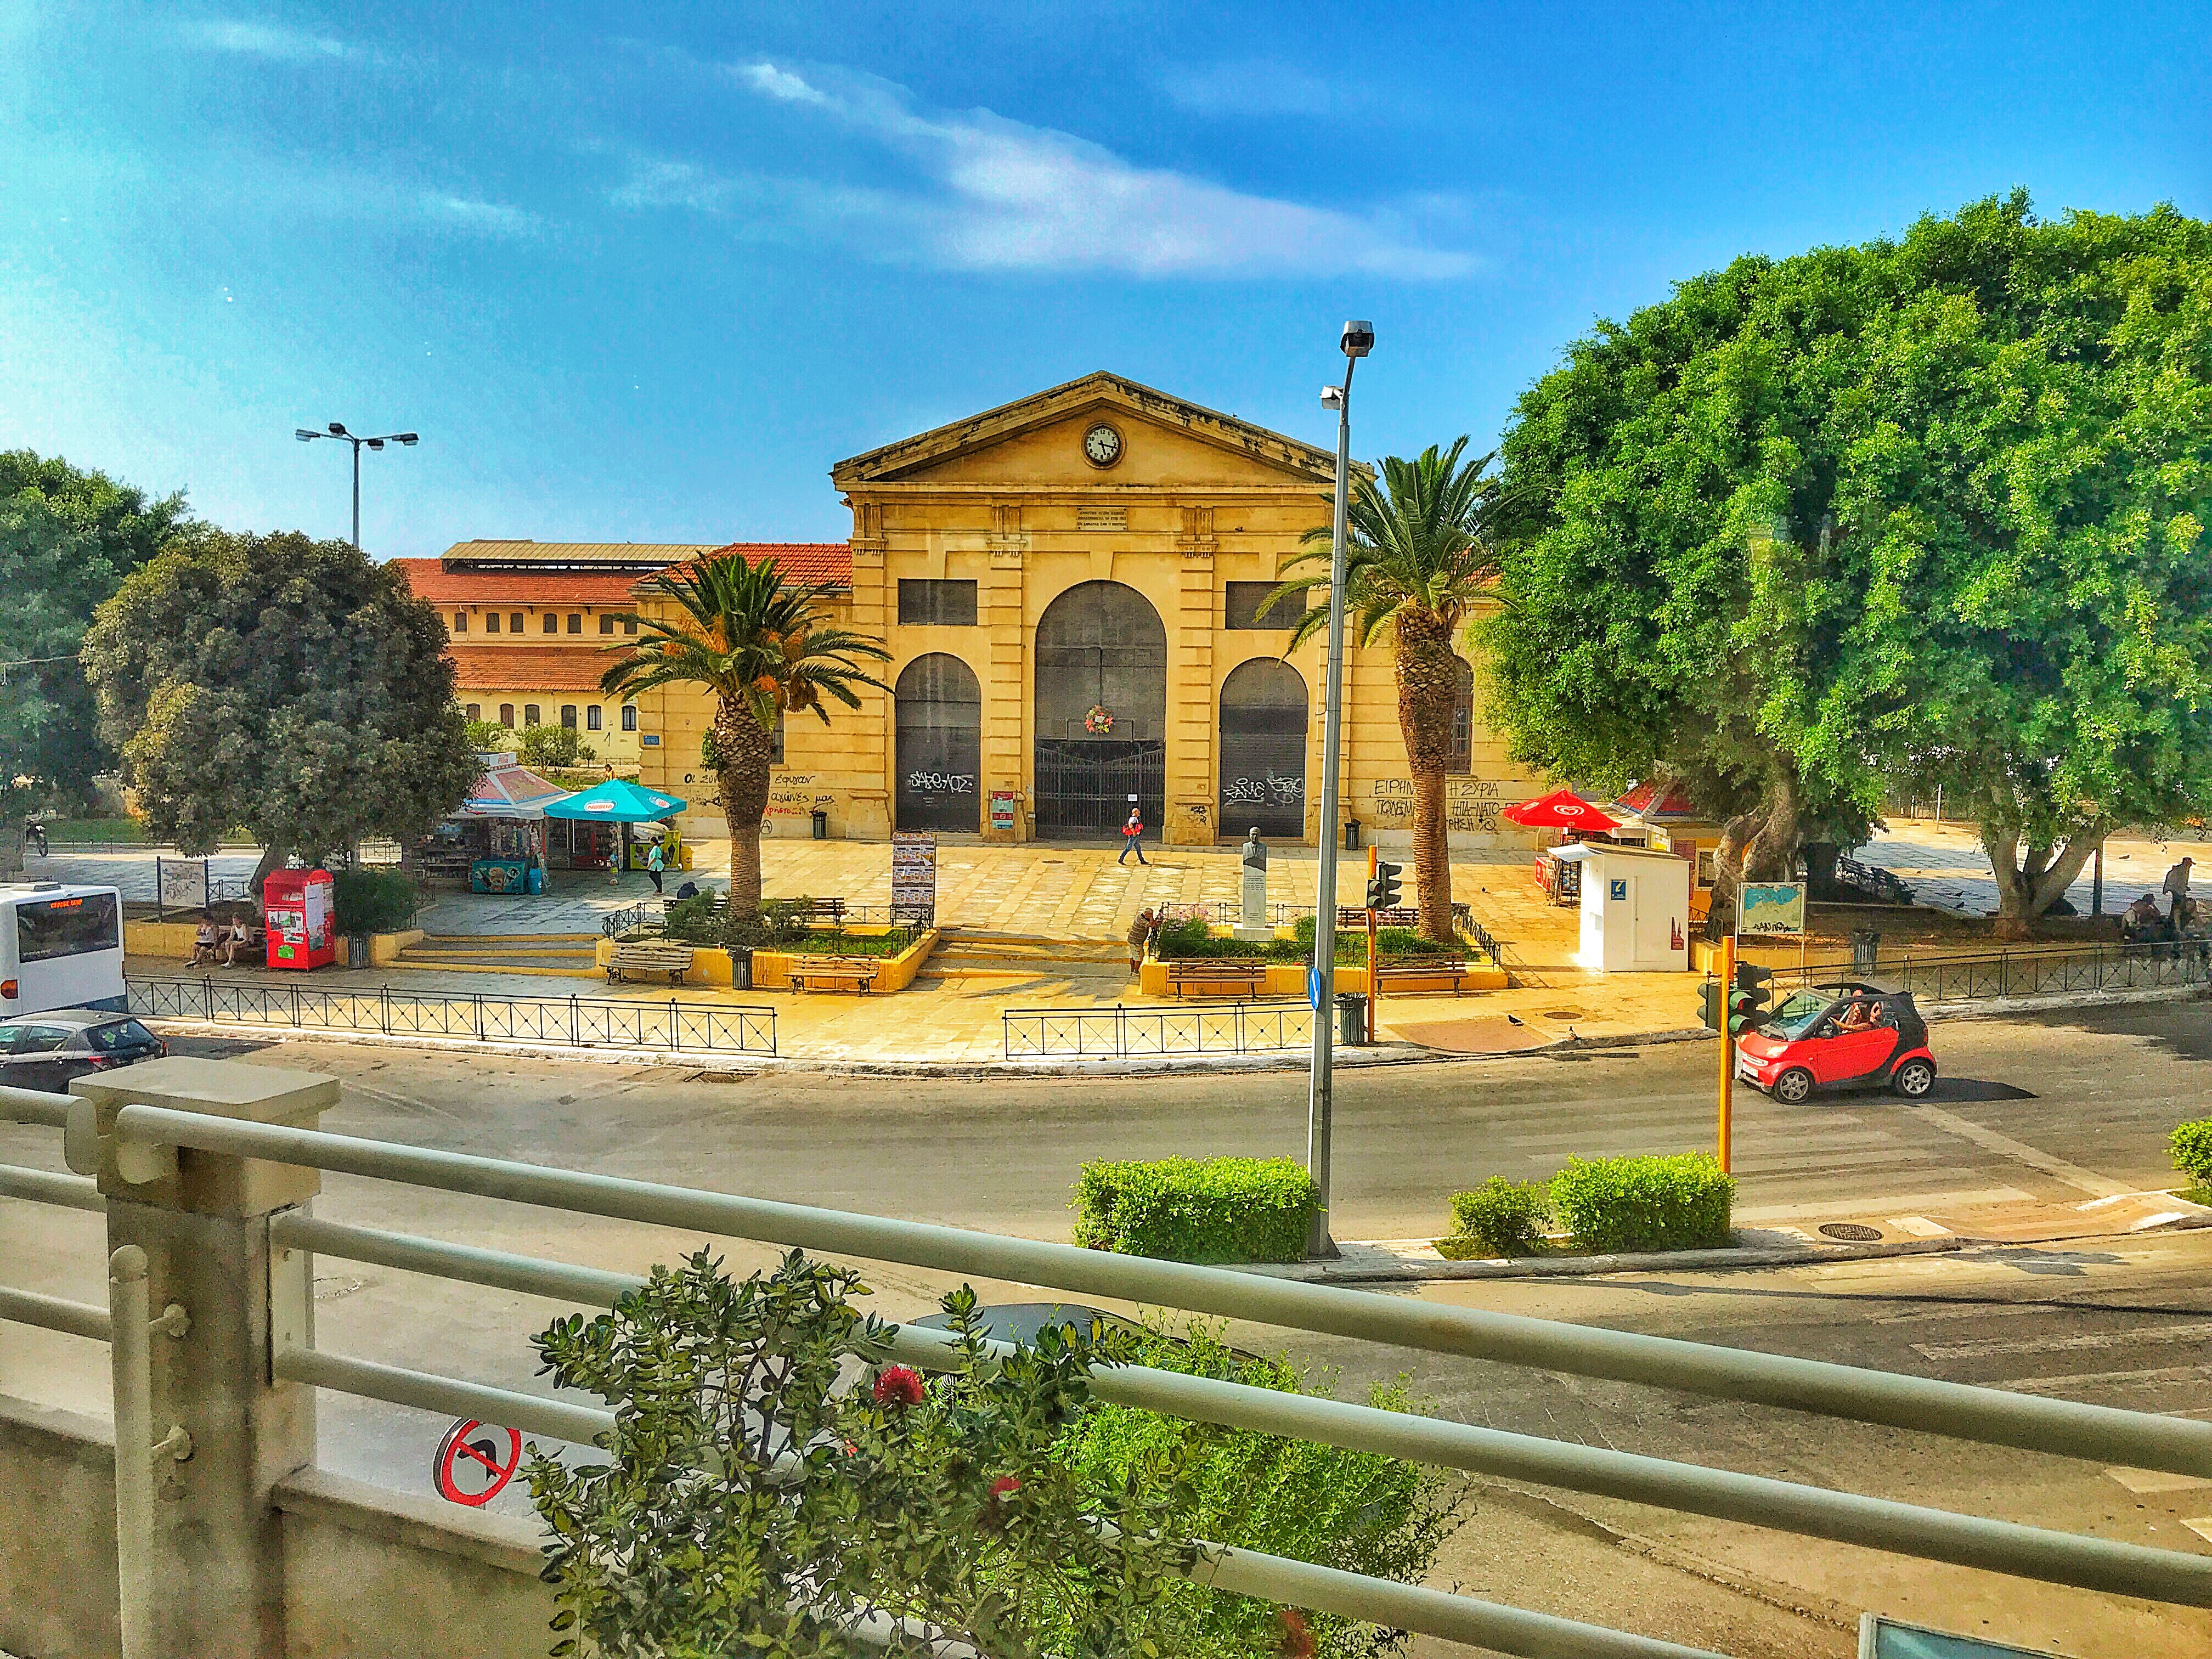 Θέα από την καφετέρια του ξενοδοχείου Κύδων 4* στα Χανιά Κρήτης προς την παλιά αγορά των Χανίων.